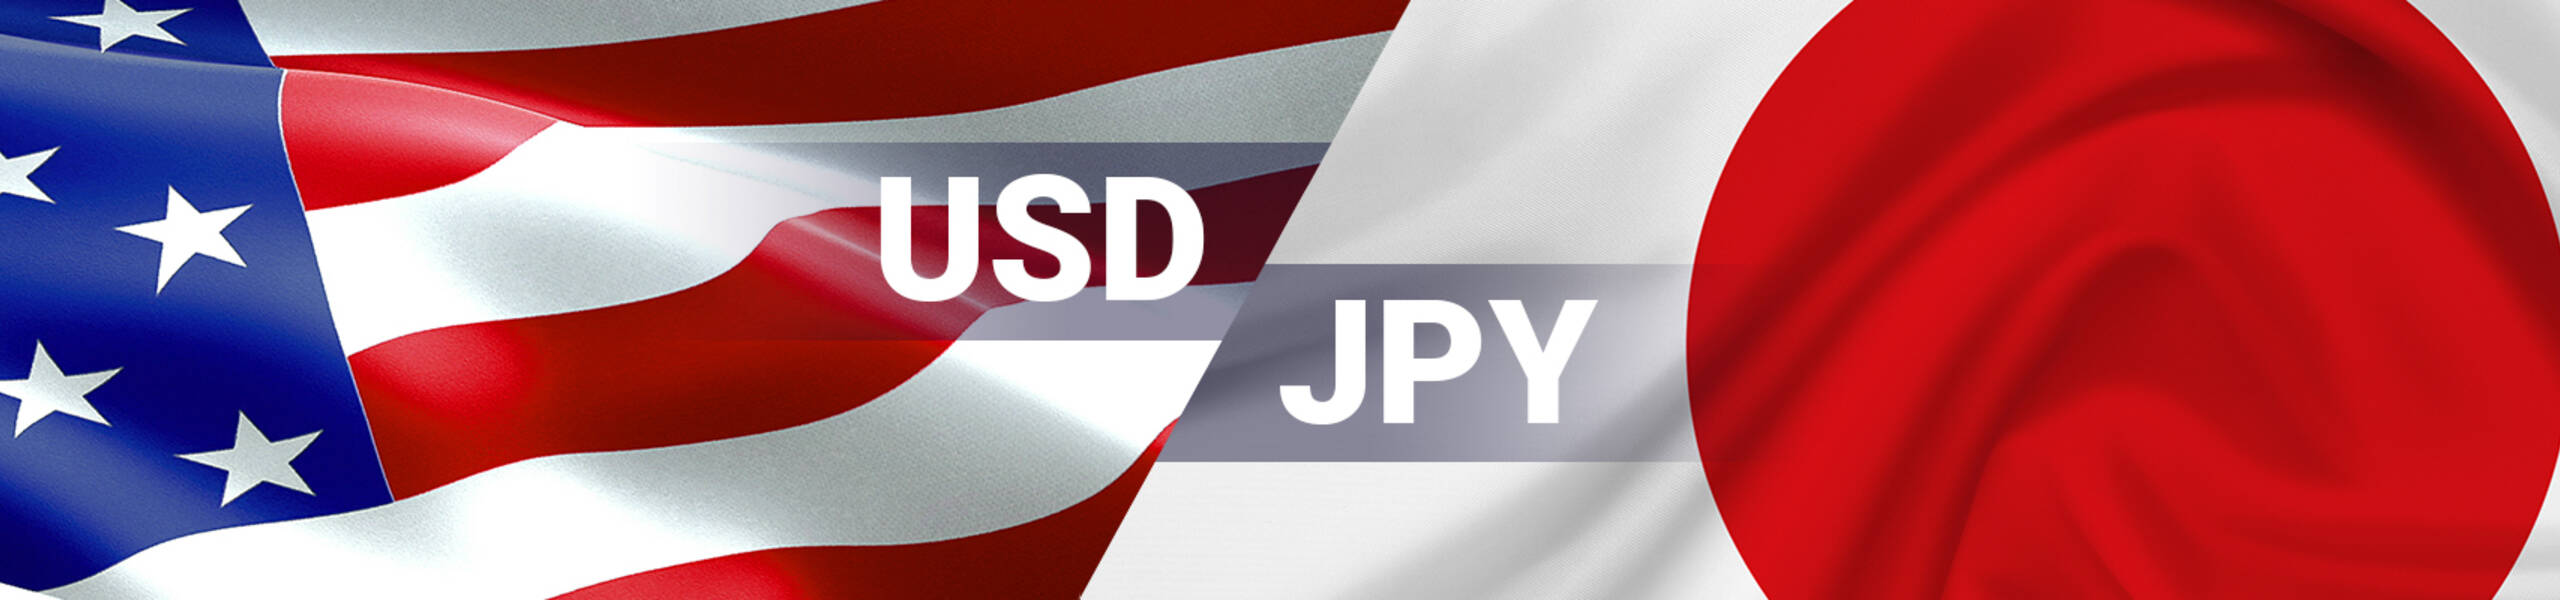 USD/JPY en zona de amplia oferta vendedora